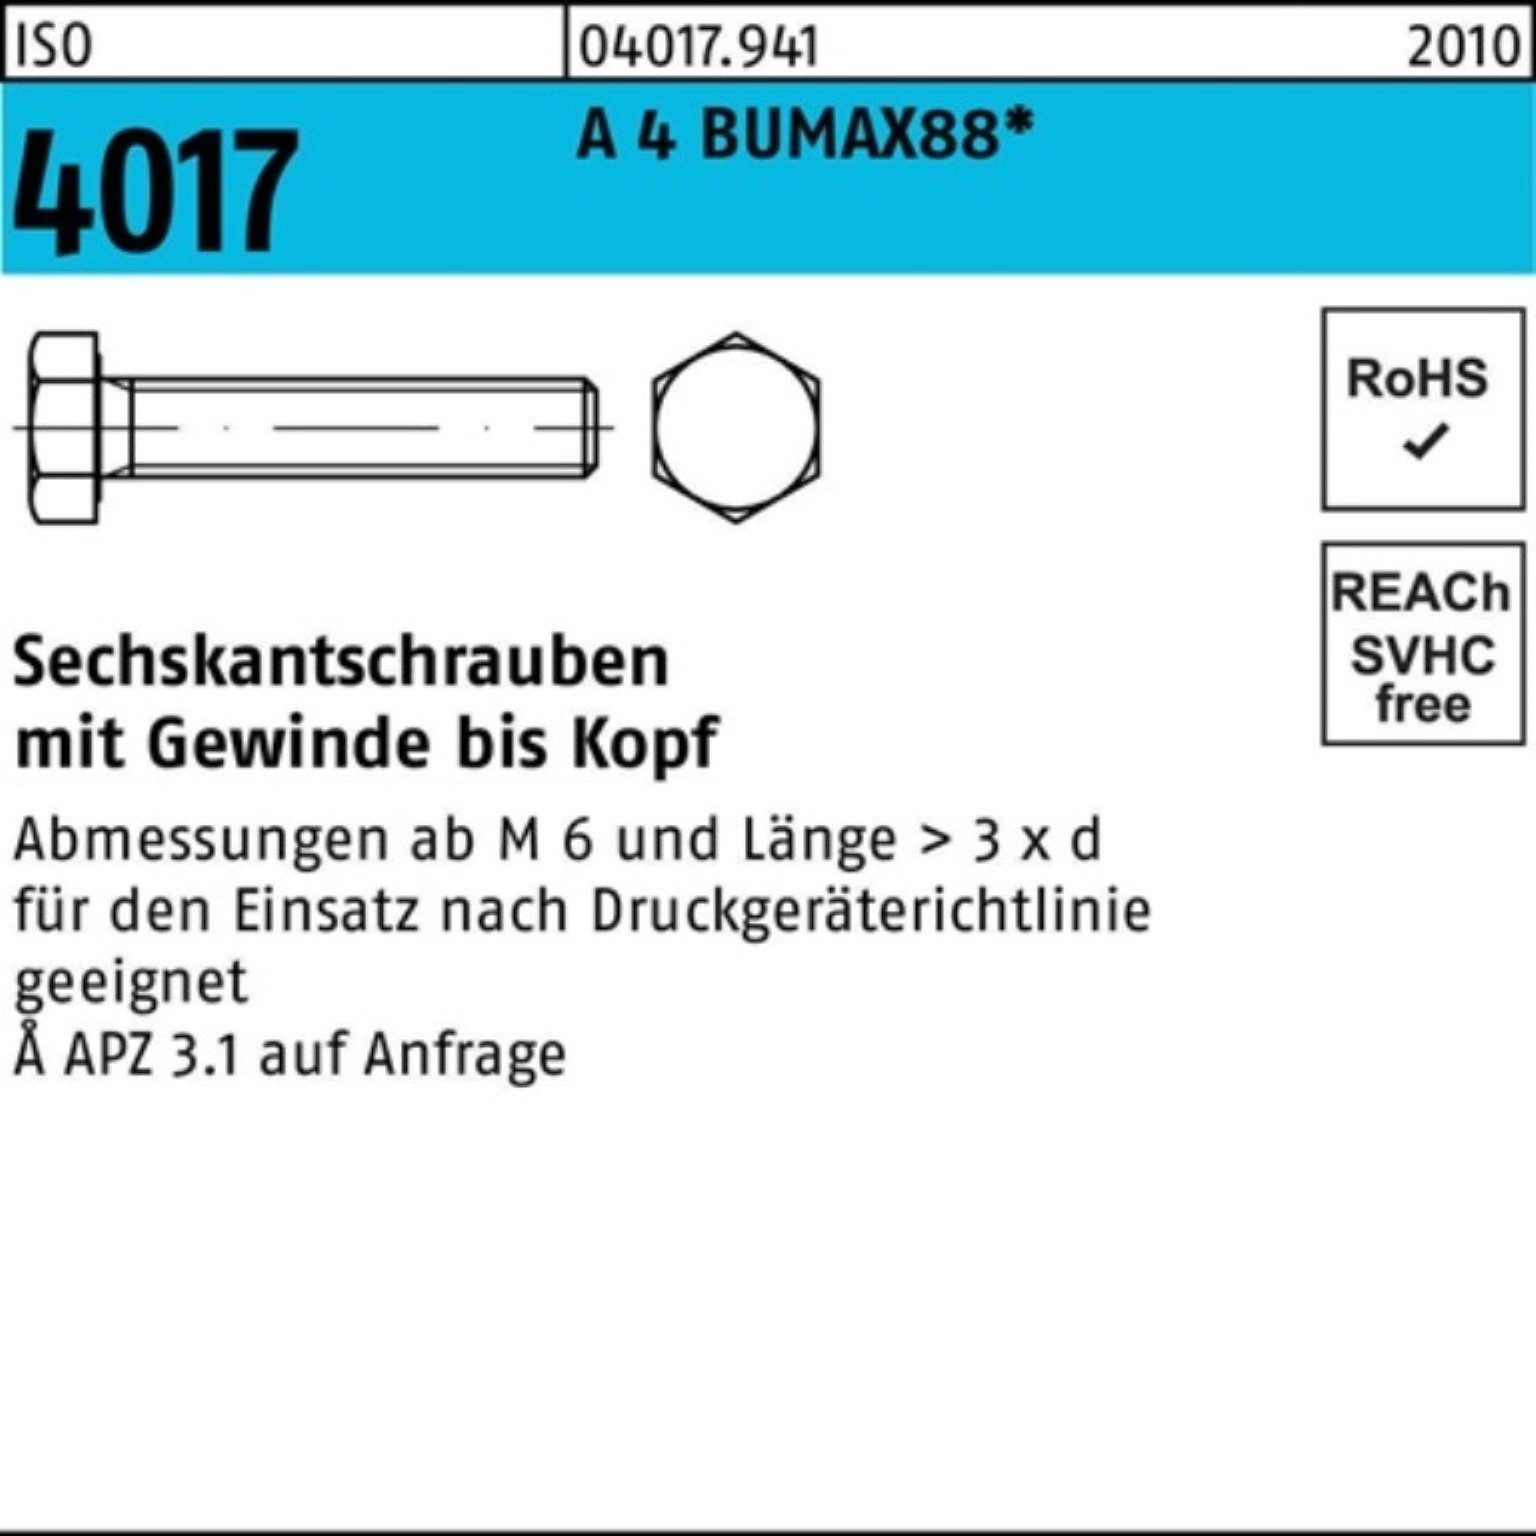 Bufab Sechskantschraube BUMAX88 VG A Sechskantschraube 60 10 Pack 4017 Stück M20x ISO 100er 4